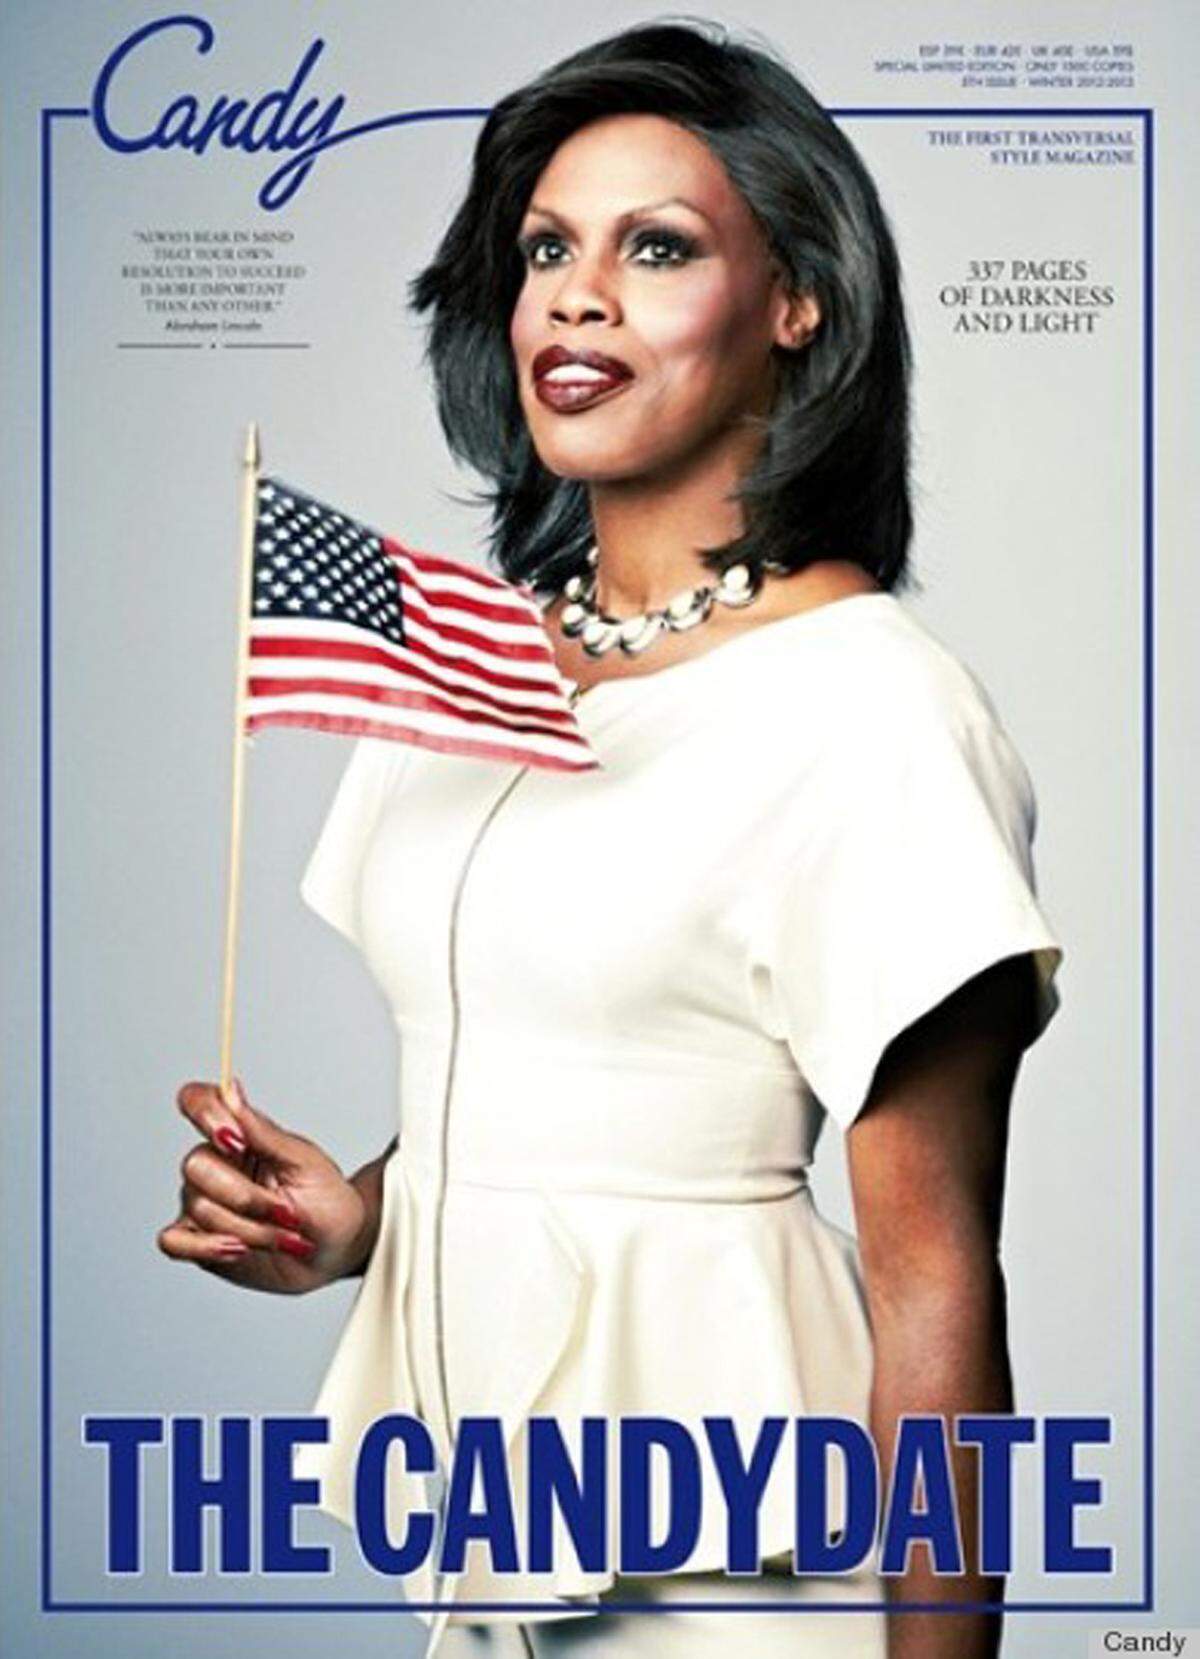 Der Präsidenten-Wahlkampf und das Weiße Haus waren für Luis Venegas, dem Herausgeber des Candy Magazins, die Inspiration für das neue Cover der Publikation. Transgender-Model Connie Fleming übernimmt die sehr überzeugende Rolle von Michelle Obama unter dem Titel "The Candydate".